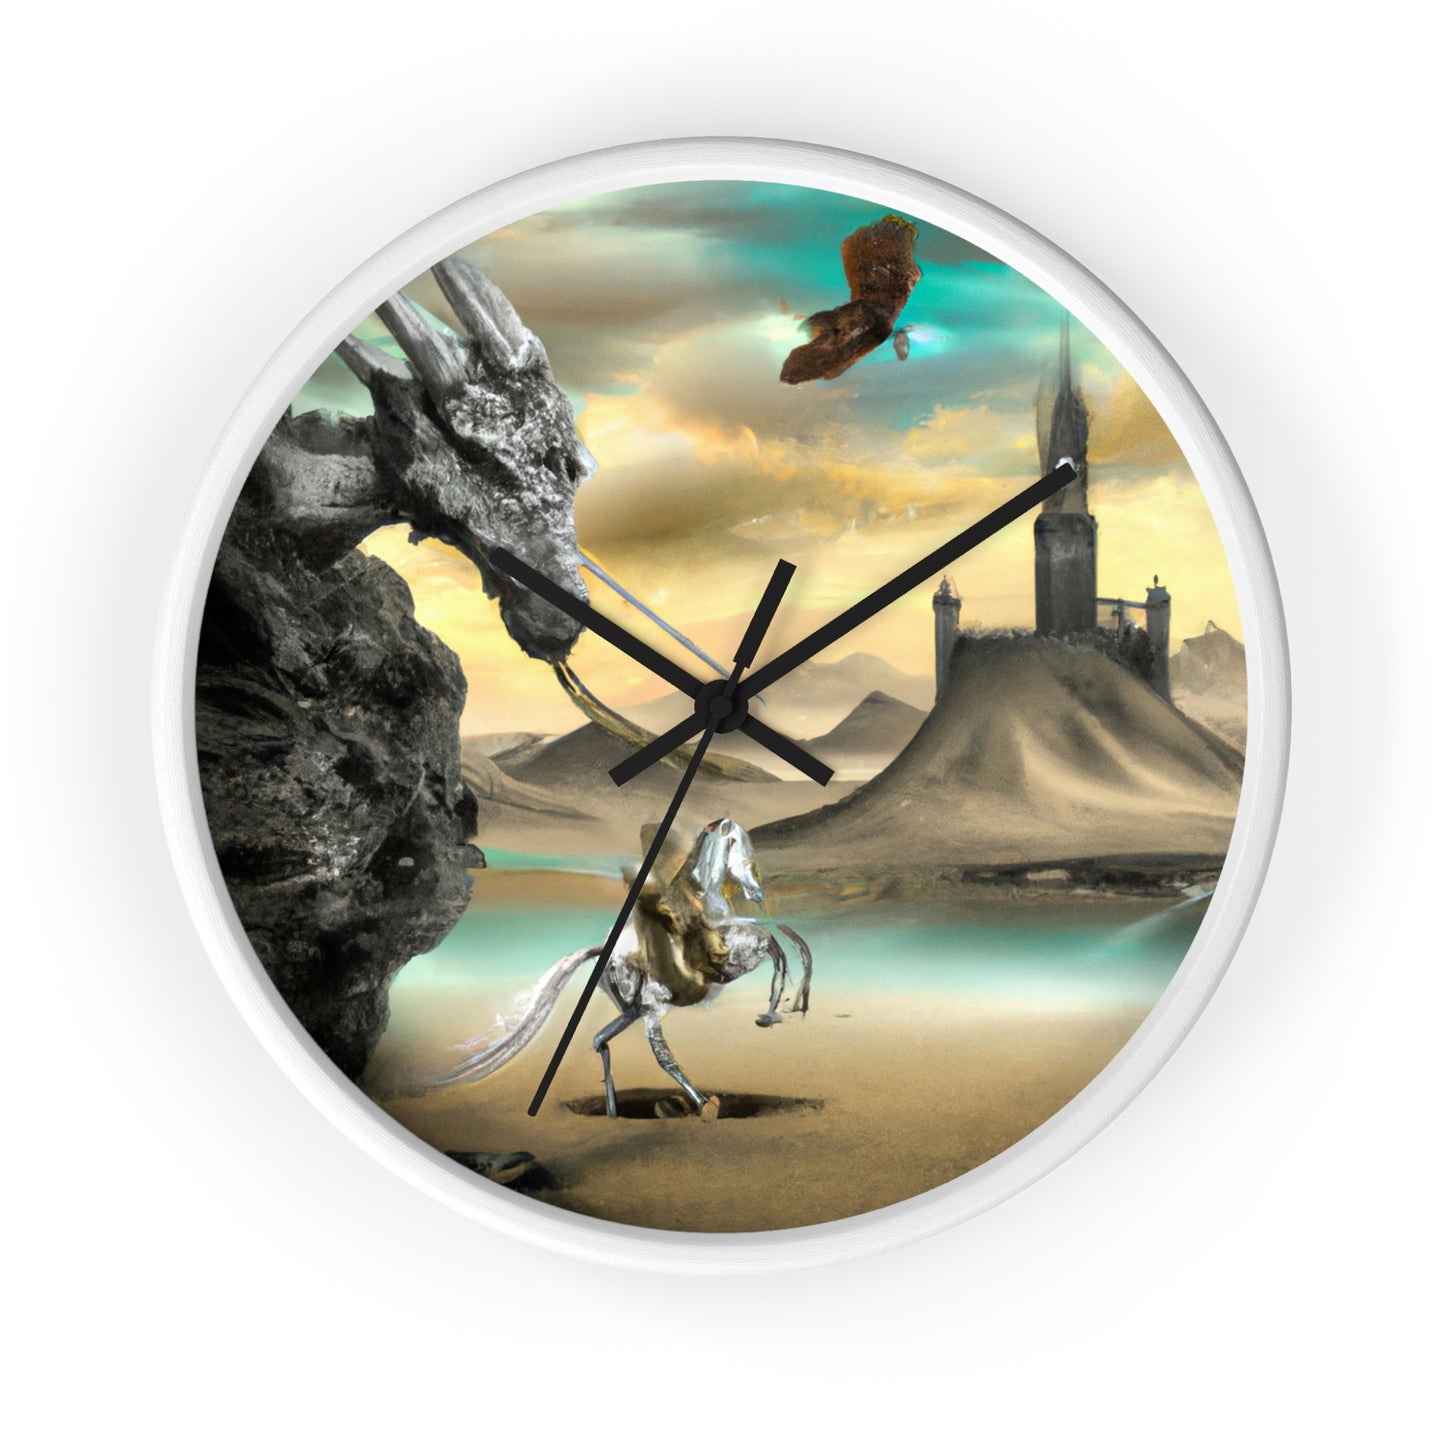 El caballero y el trono del dragón - El reloj de pared alienígena